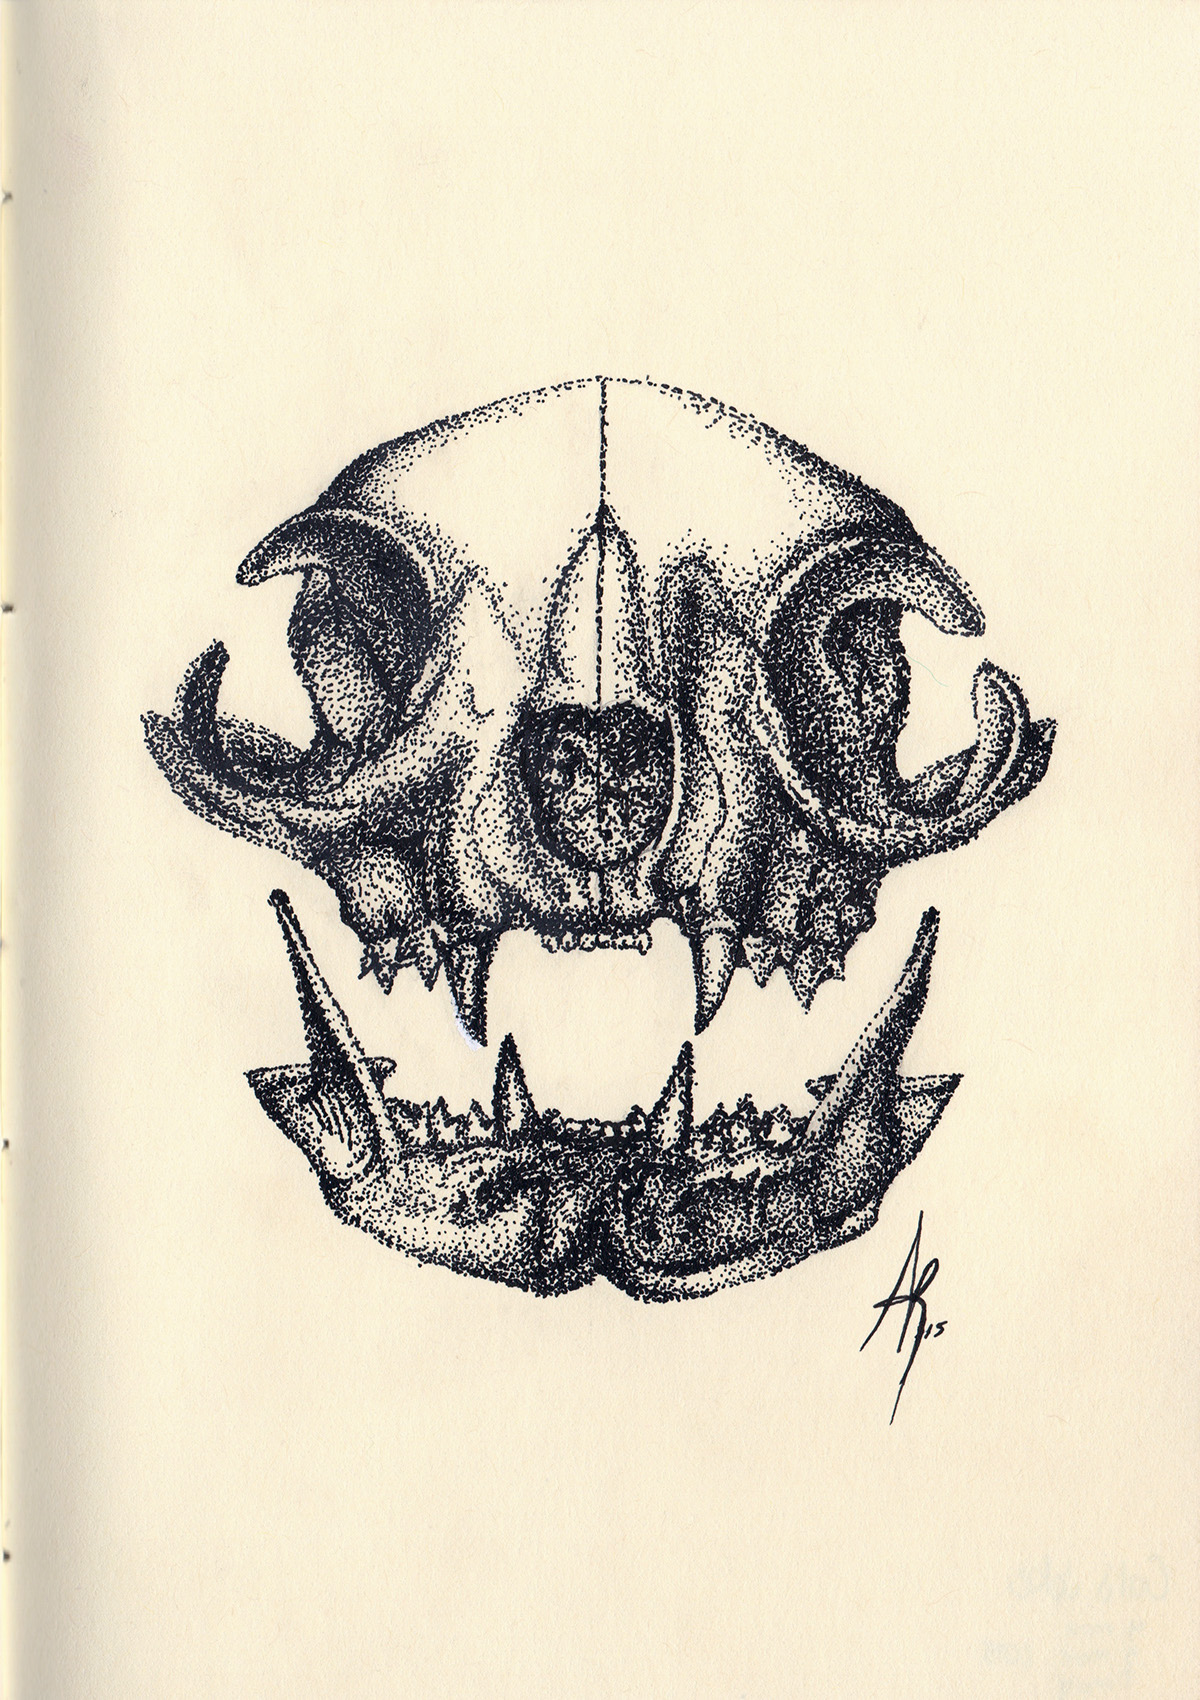 Cat skull scientific illustration Flowers Pointillism puntillismo sketchbook ink staedtler